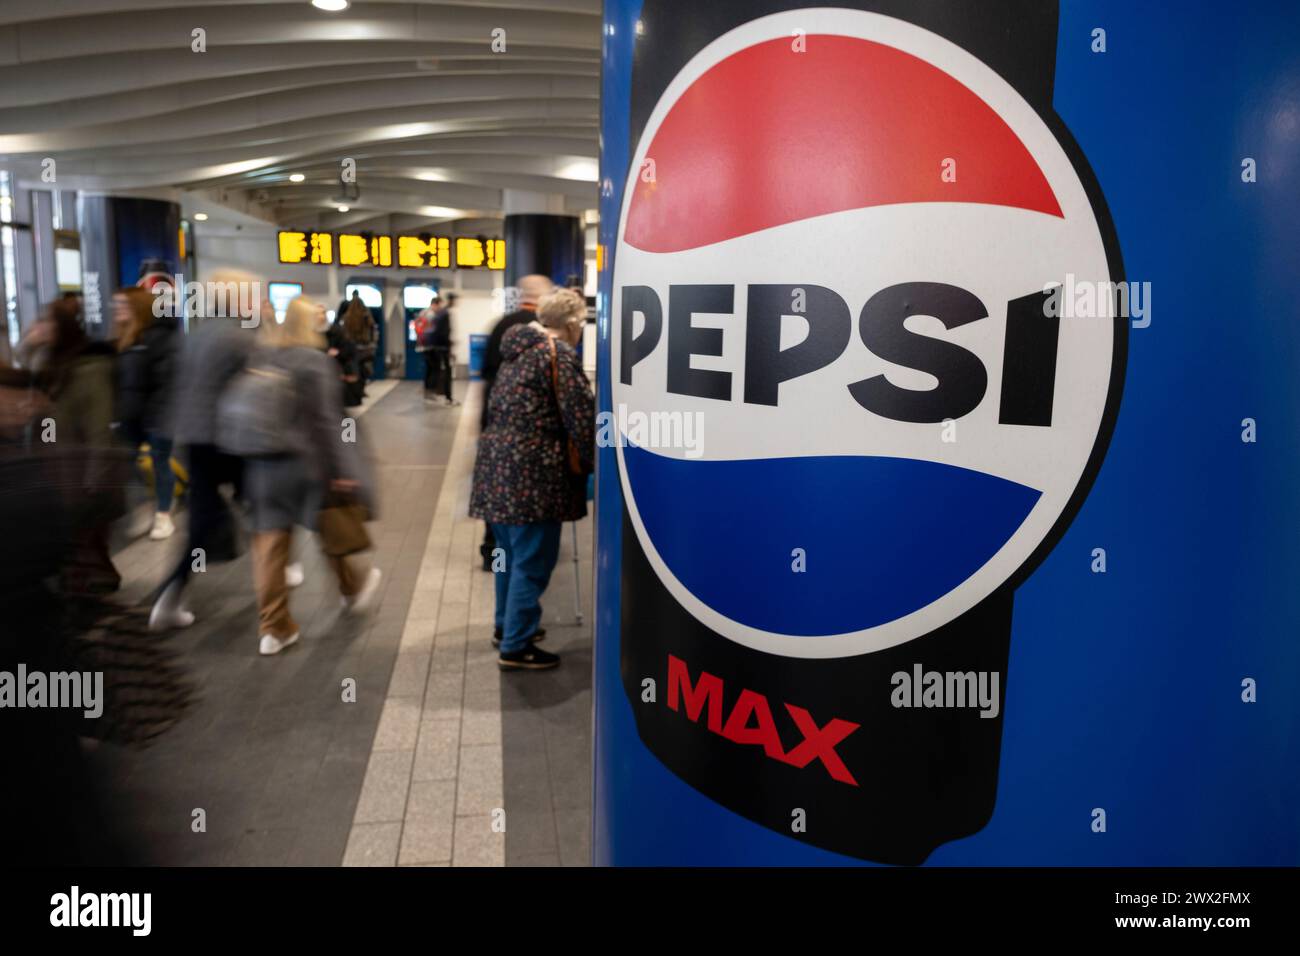 Nuovo logo Pepsi in mostra su cartelloni pubblicitari il 21 marzo 2024 a Birmingham, Regno Unito. Il Pepsi Globe è il logo della bevanda analcolica Pepsi, che prende il nome dal suo design rosso, bianco e blu a forma di sfera. La Pepsi è una bevanda analcolica gassata dal sapore di cola, prodotta dalla multinazionale americana PepsiCo. Foto Stock